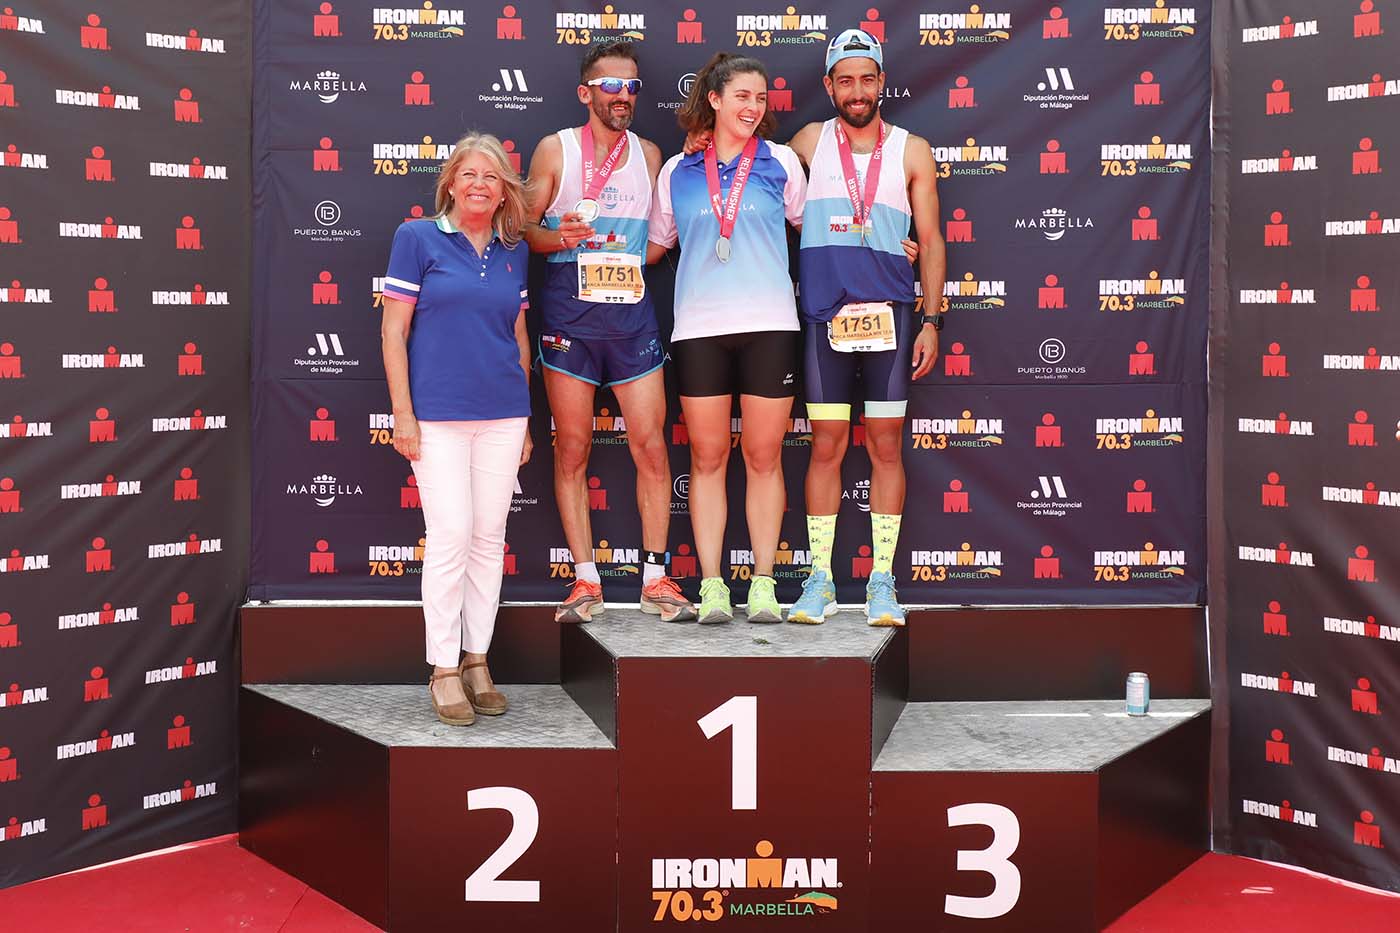 La alcaldesa destaca que el Ironman 70.3 “ha vuelto a convertir a la ciudad en epicentro del triatlón mundial”